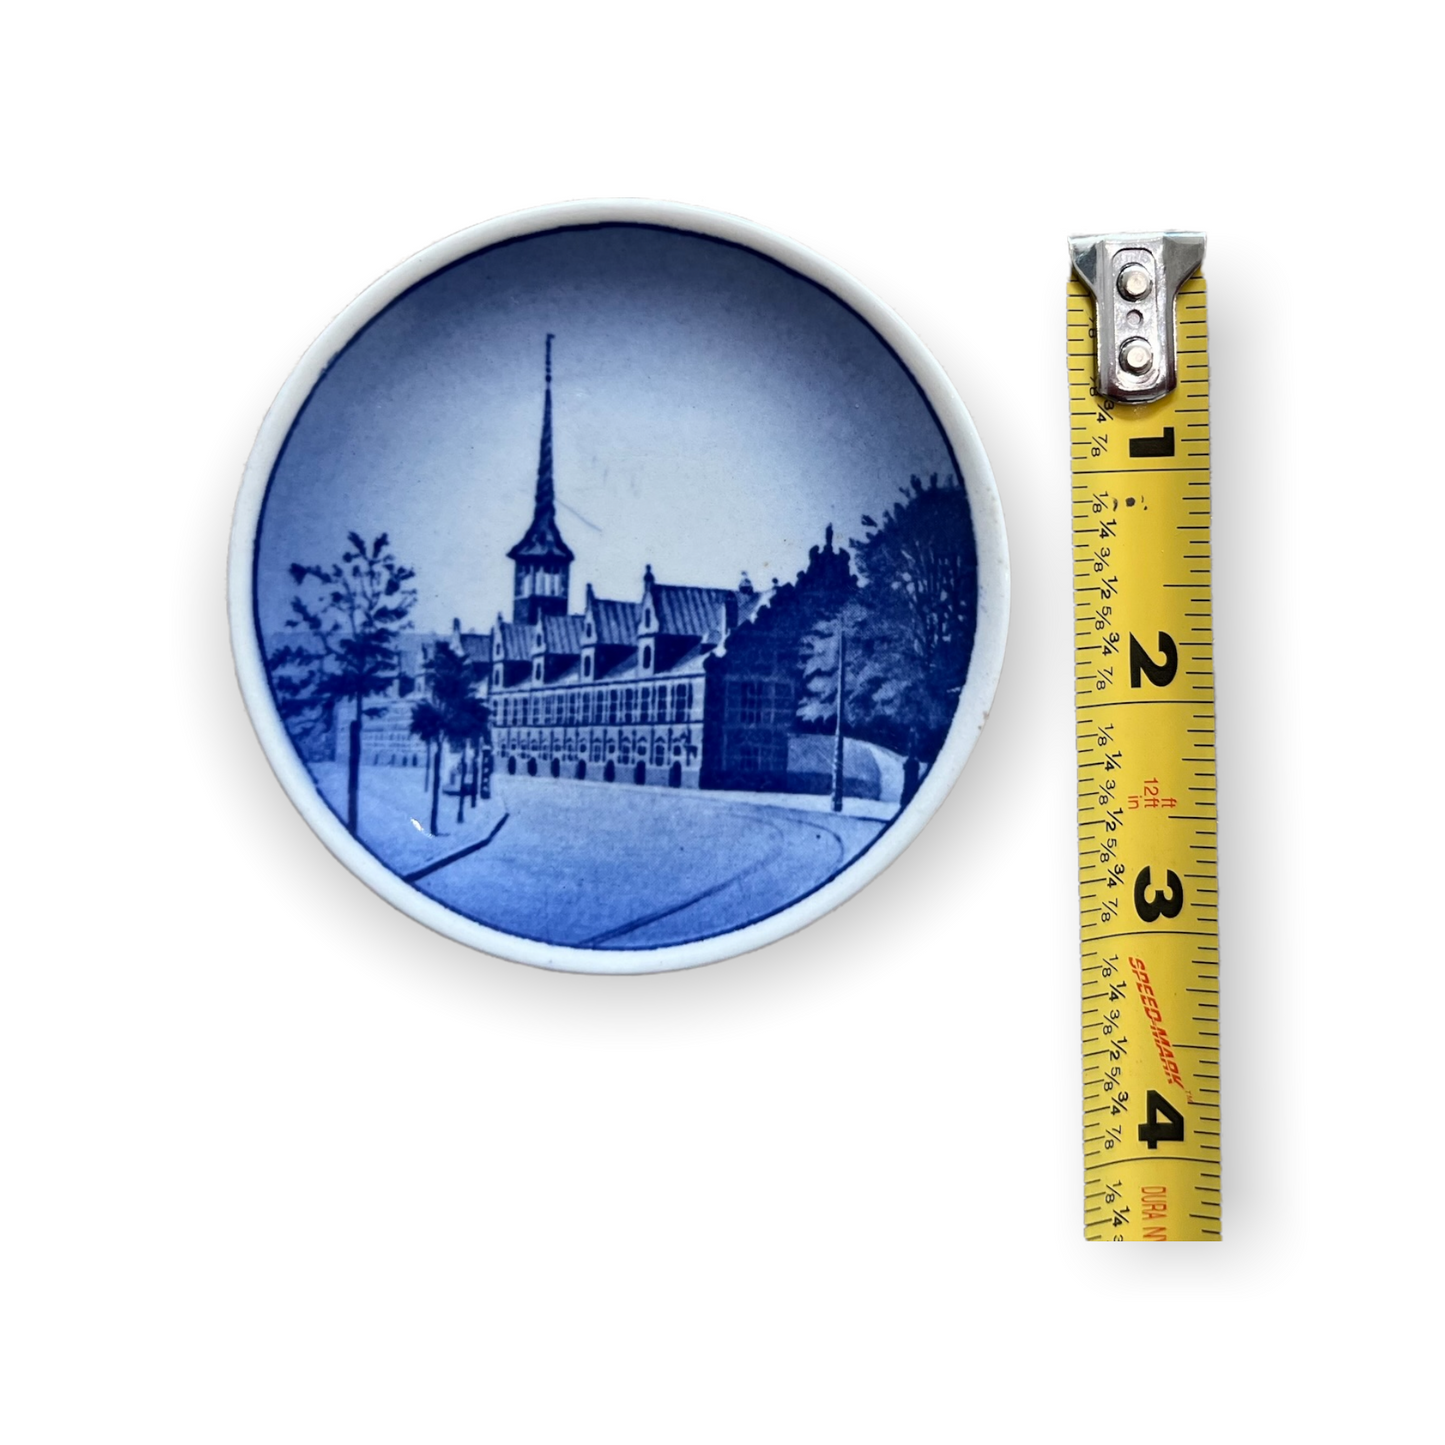 Vintage Royal Copenhagen Mini Plates - Set of 4 - Made in Denmark